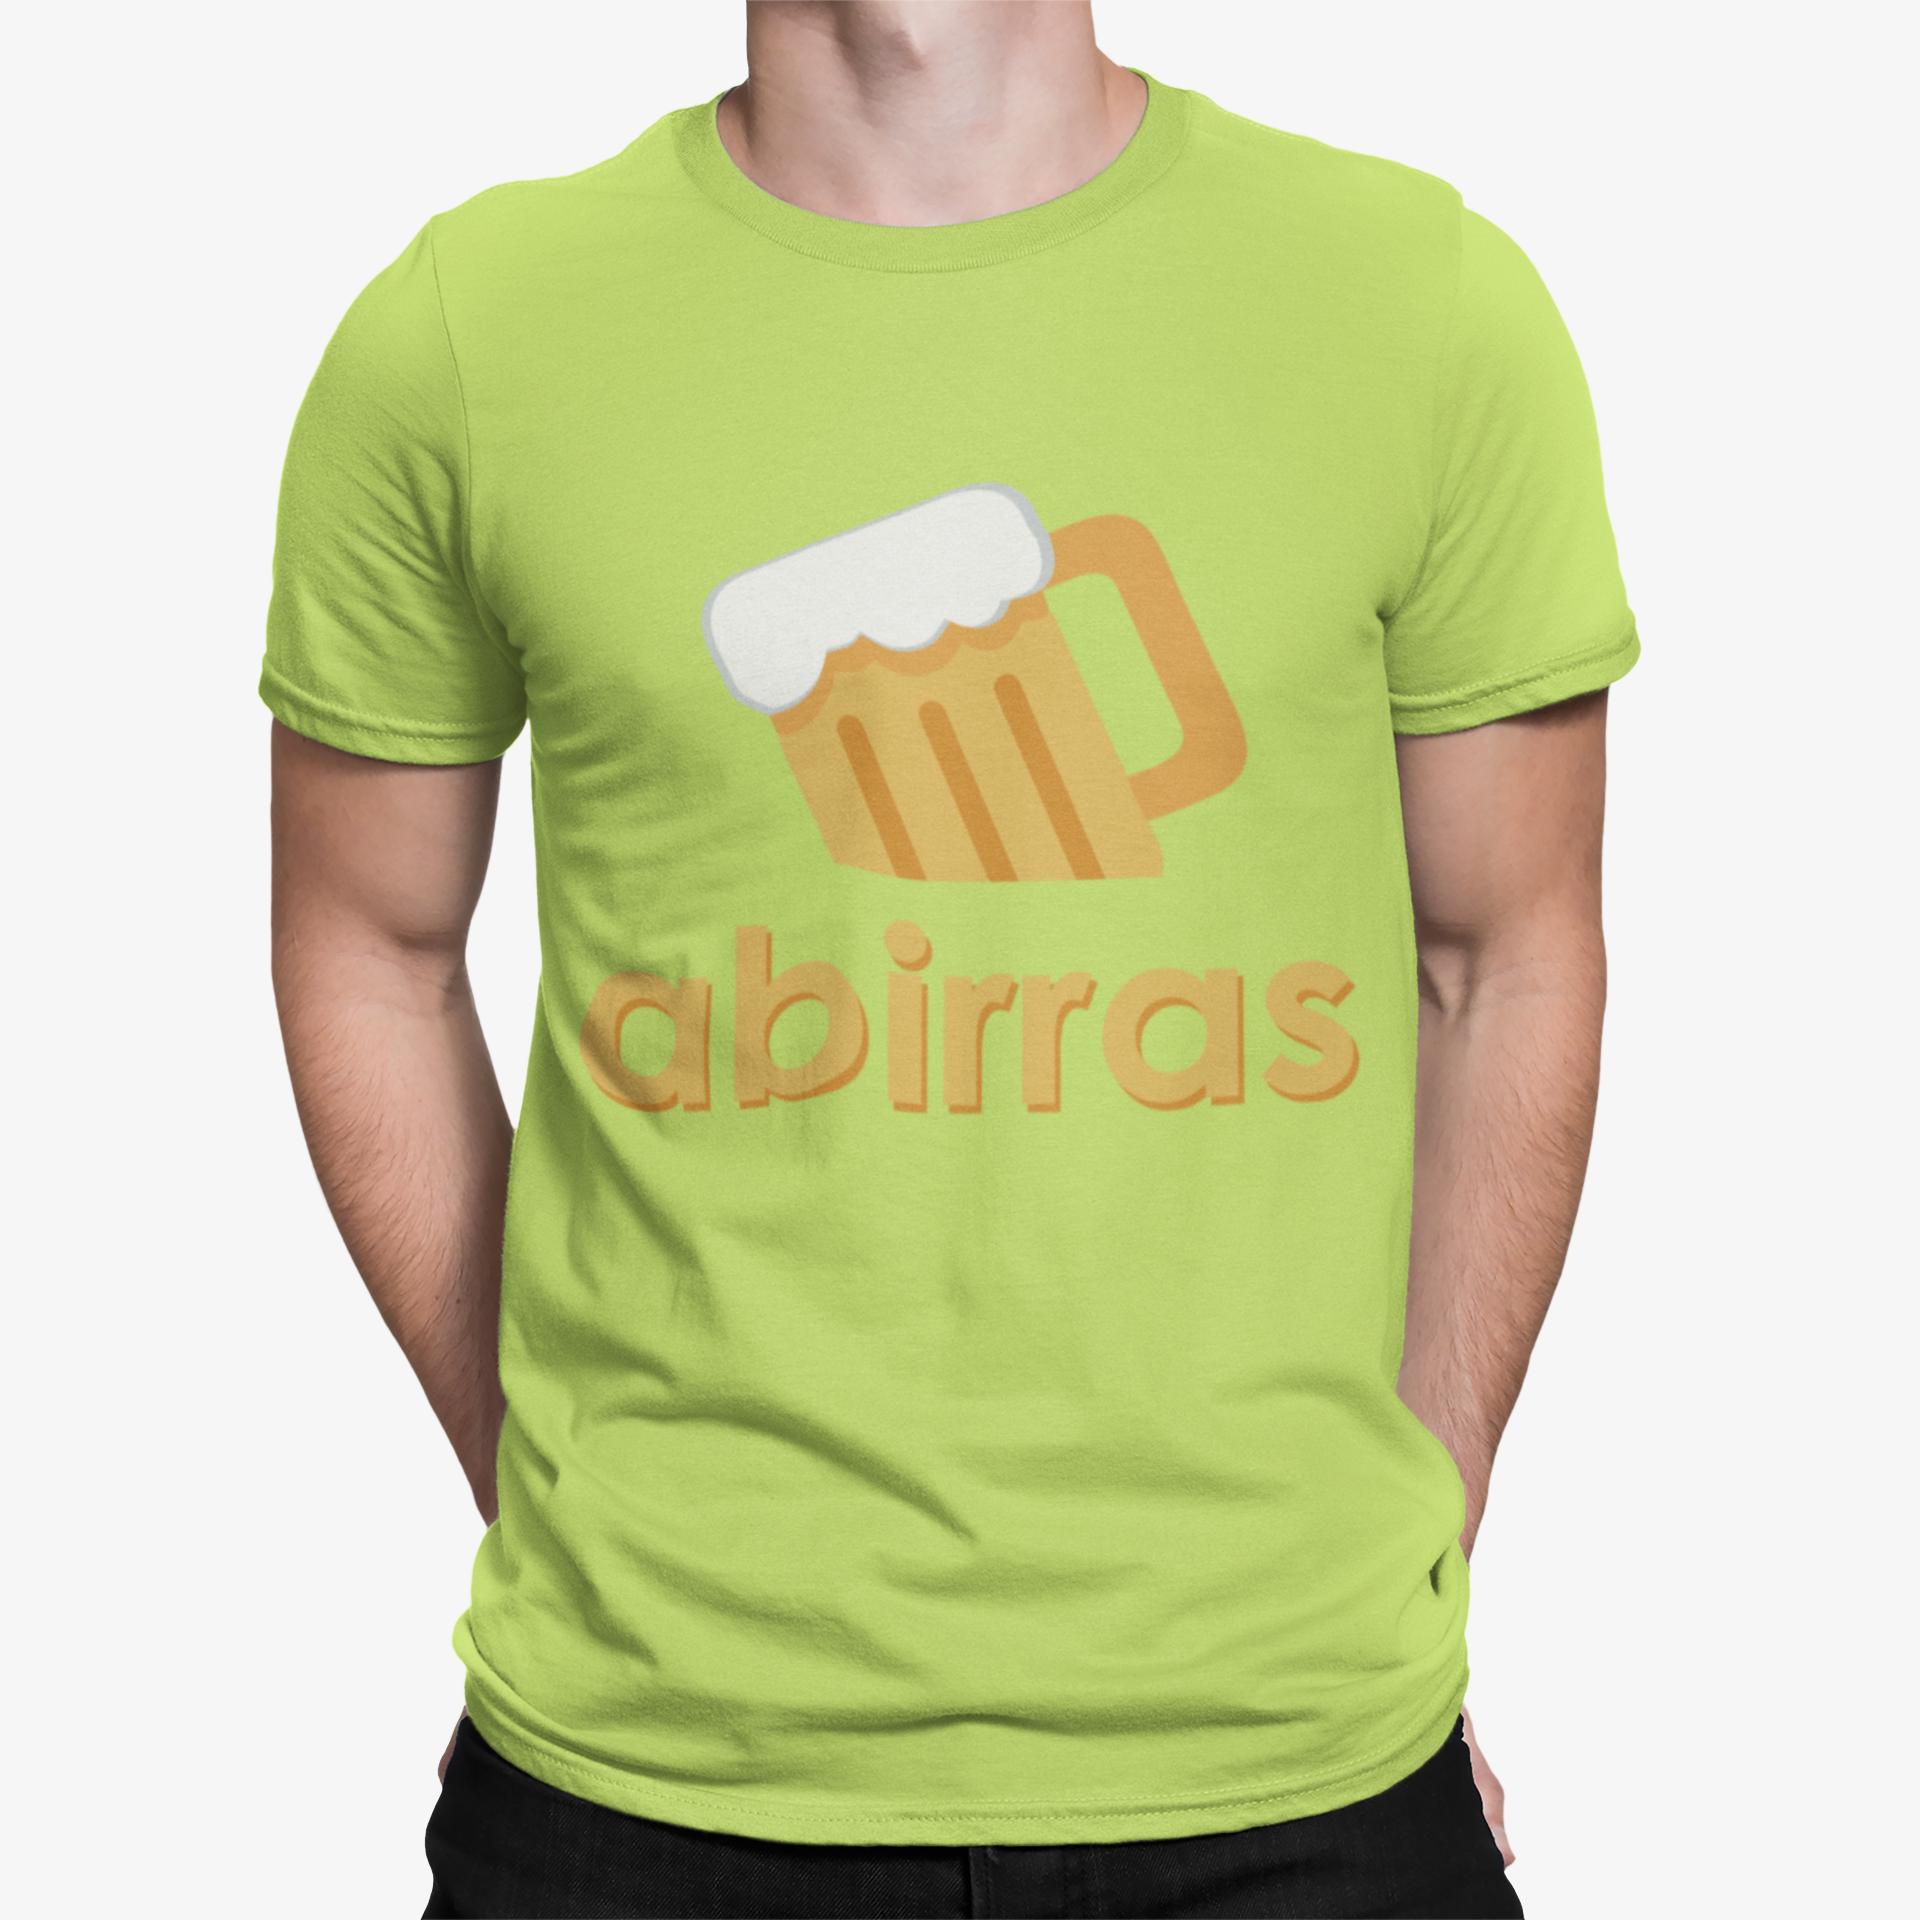 Camiseta Abirras